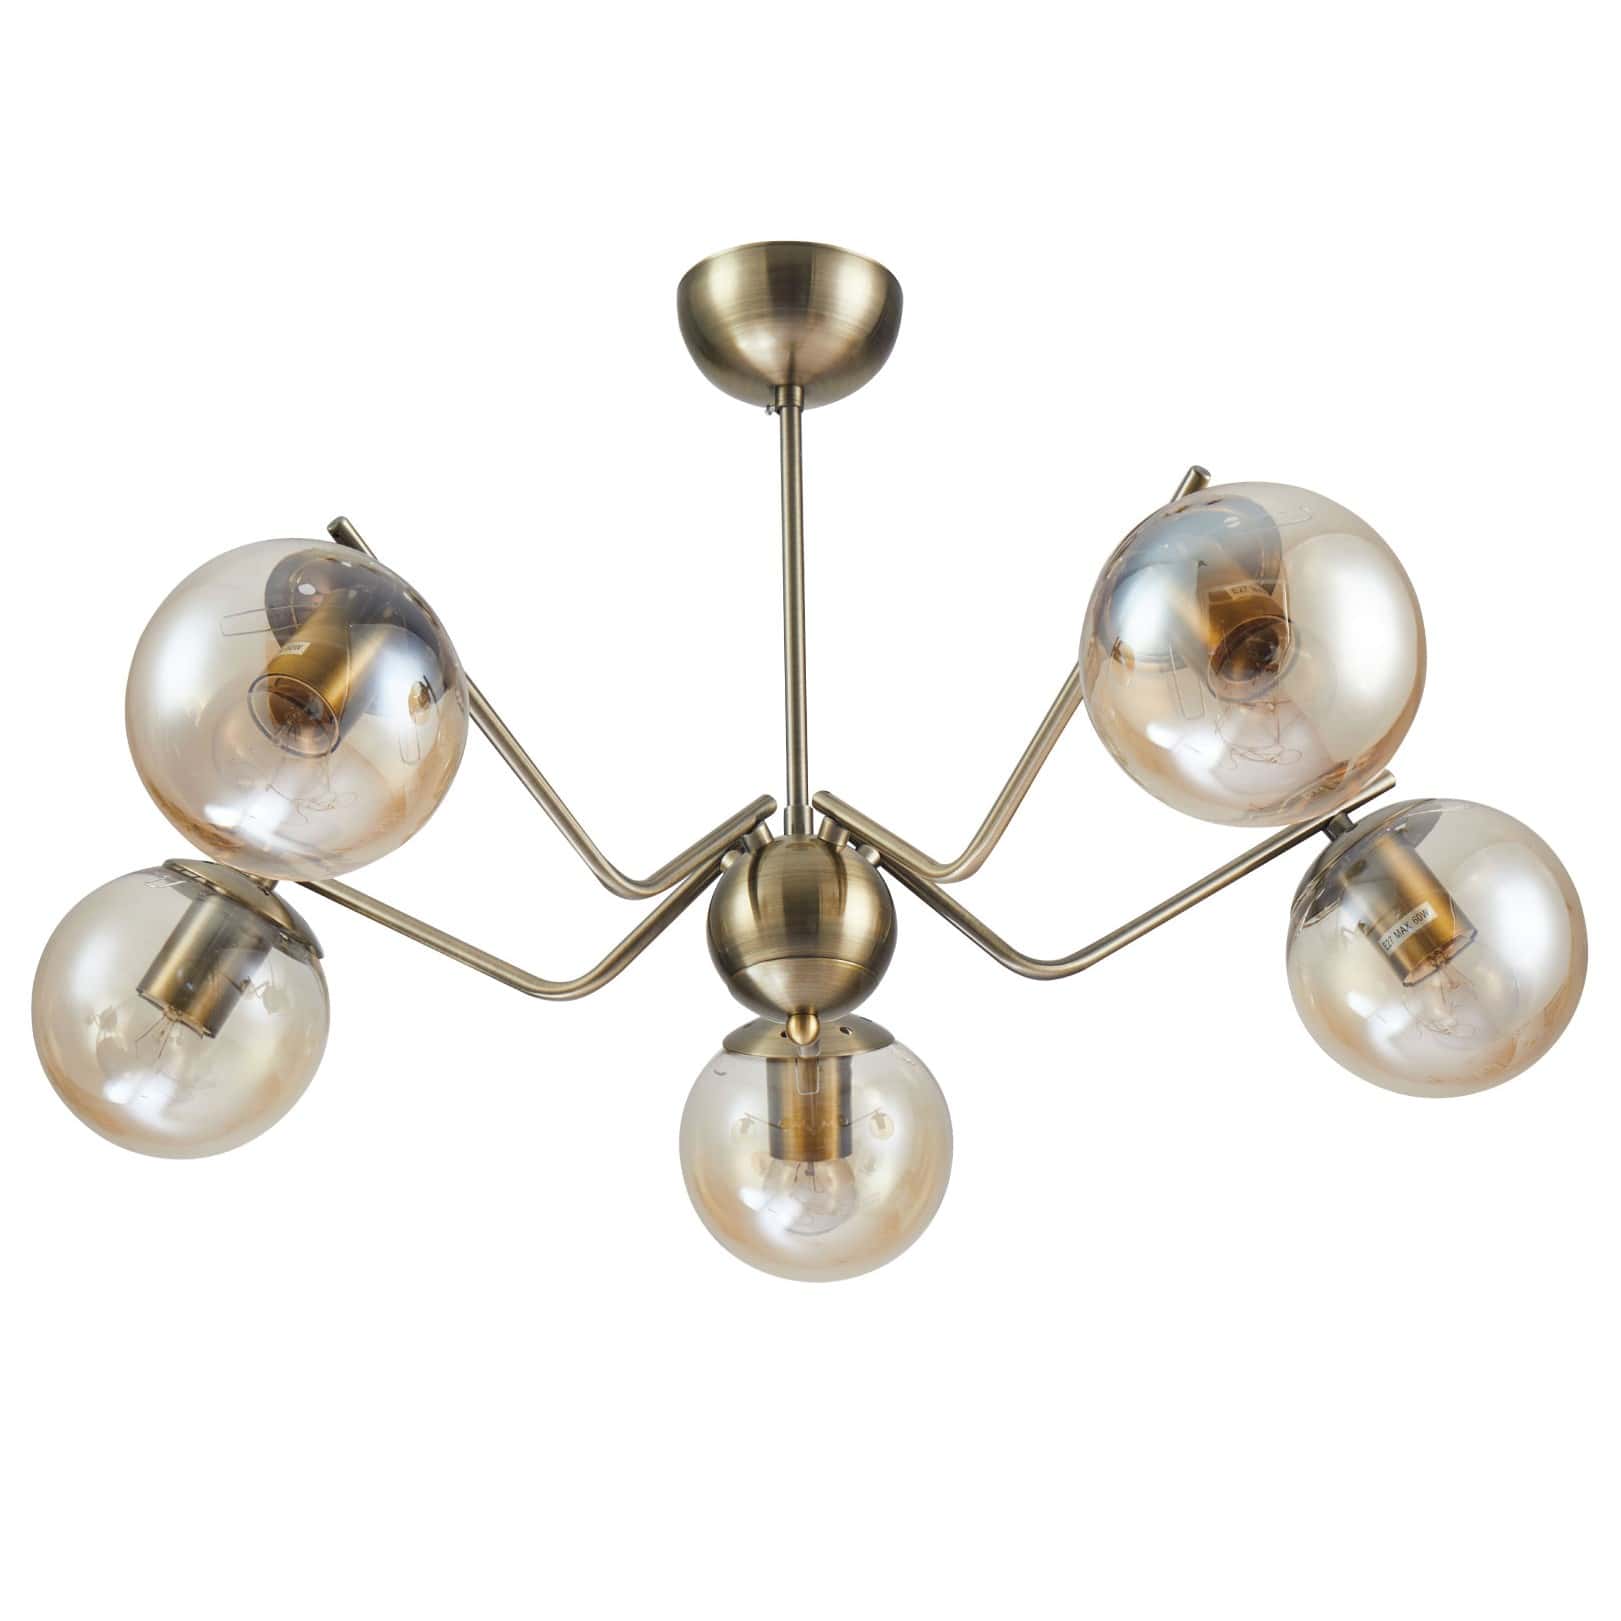 Main image of Amber Globe Glass Antique Brass Metal Spider Semi Flush Ceiling Light 159-17190 | TEKLED 159-17190